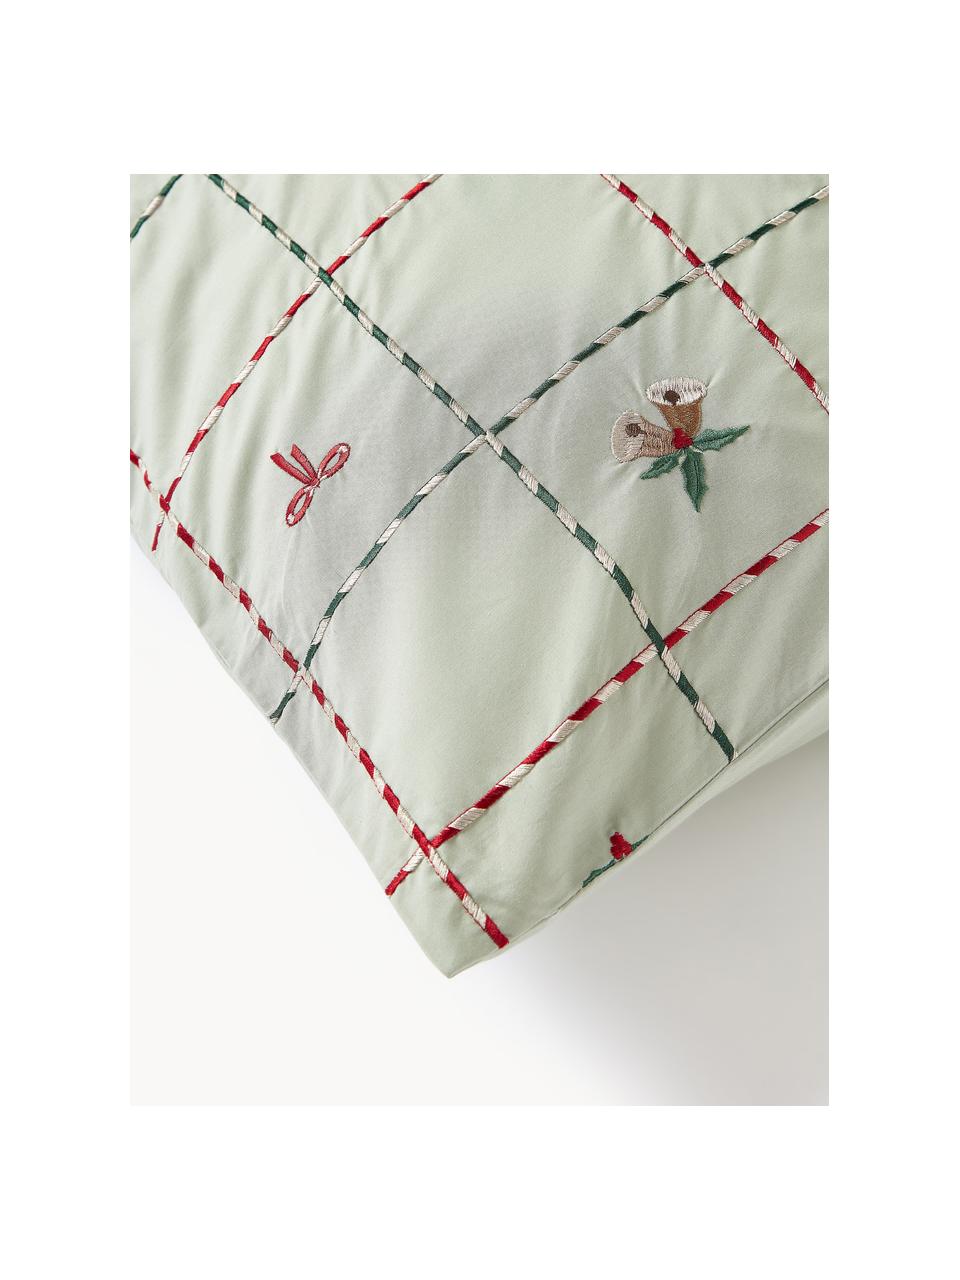 Federa in cotone percalle ricamato con motivi natalizi Rudy, Verde salvia, multicolore, Larg. 50 x Lung. 80 cm